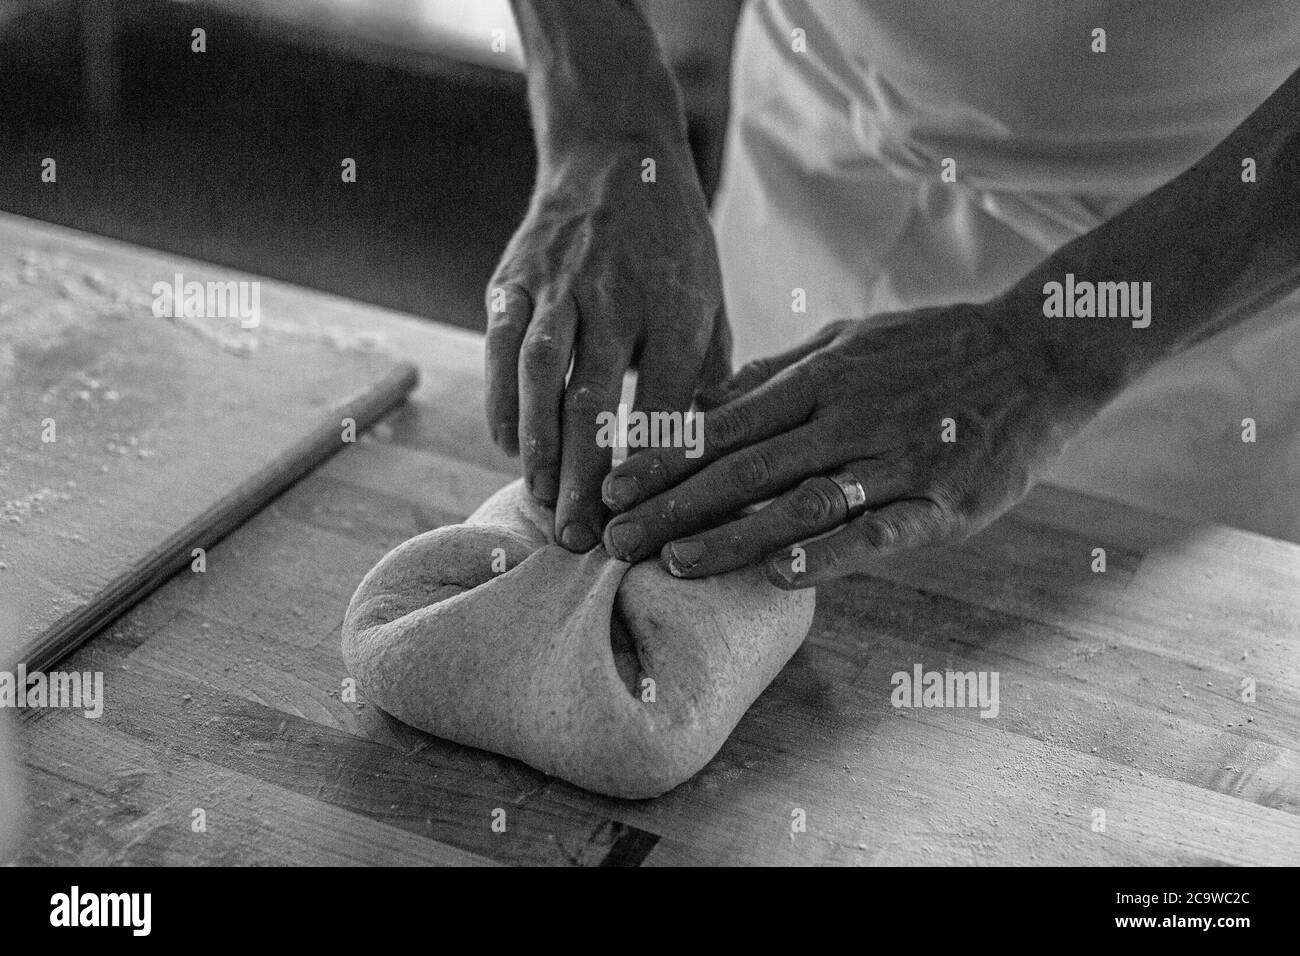 Préparation de pain au levain à Whistler, Colombie-Britannique, Canada, naturel, pain végétalien Banque D'Images